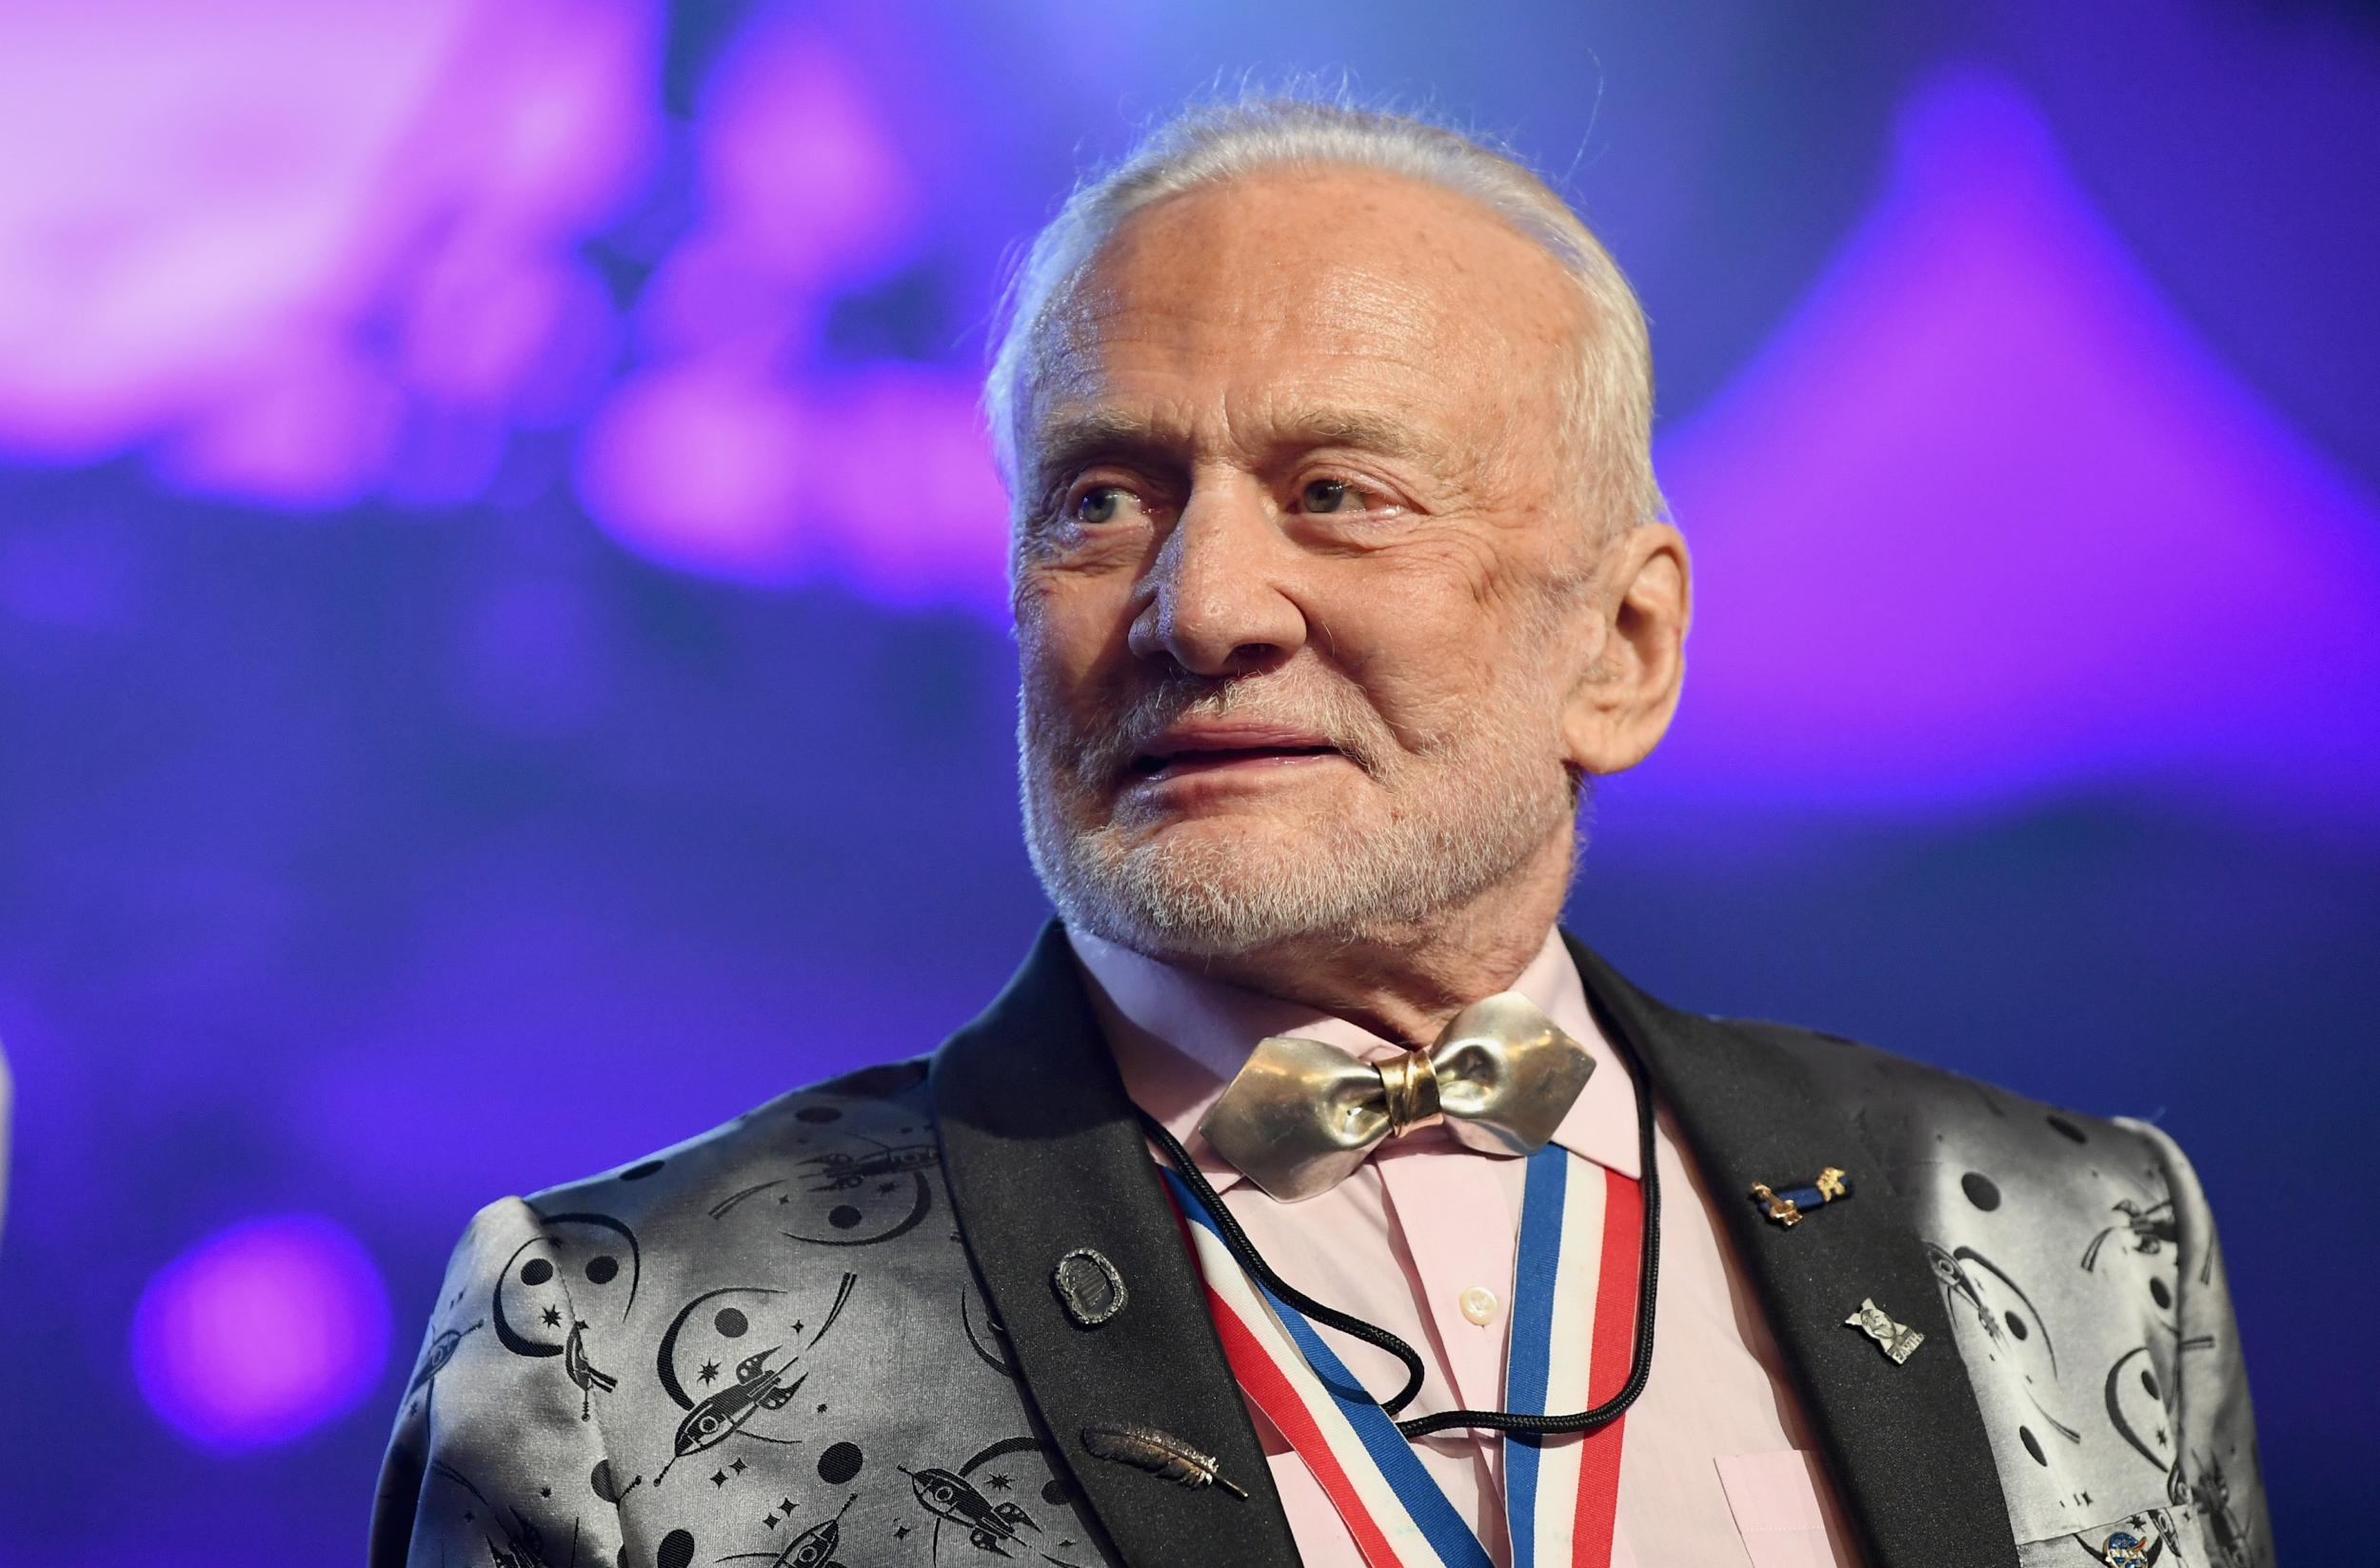 Buzz Aldrin in 2019